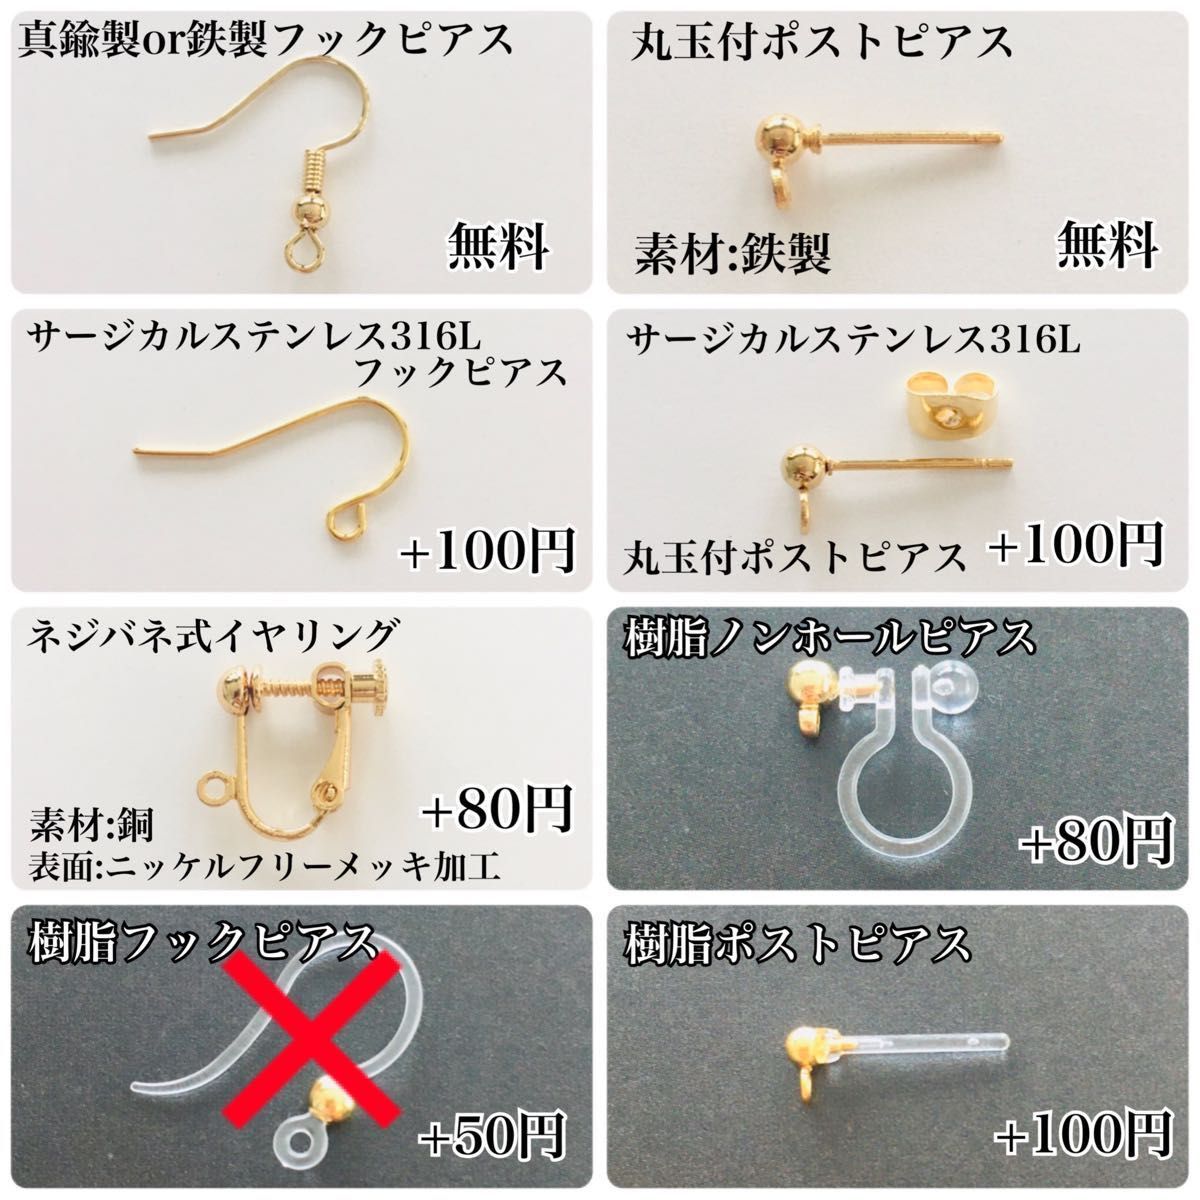 日本限定モデル】 フープ金具50個 しずく型 1612 kanagu205